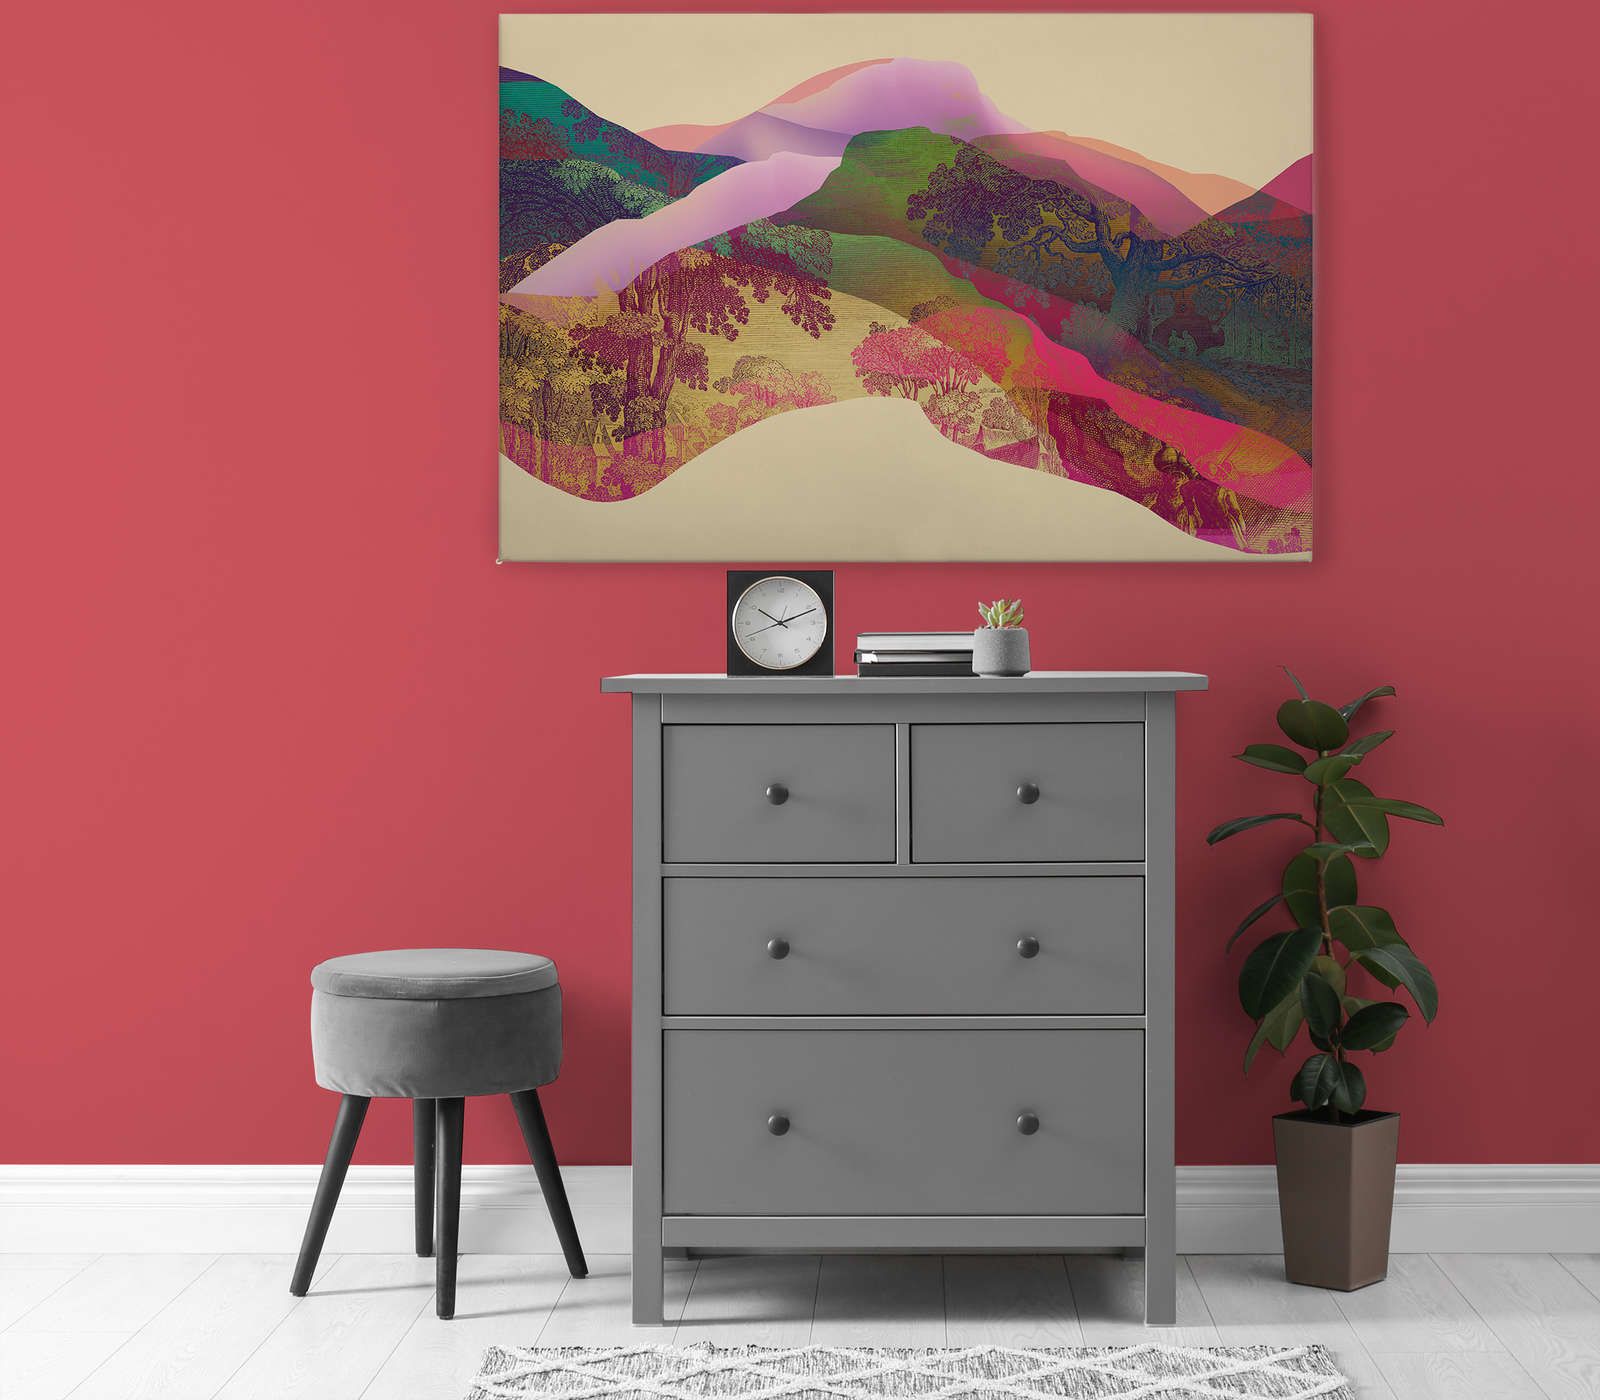             Magic Mountain 2 - Canvas schilderij Berglandschap abstract - 1.20 m x 0.80 m
        